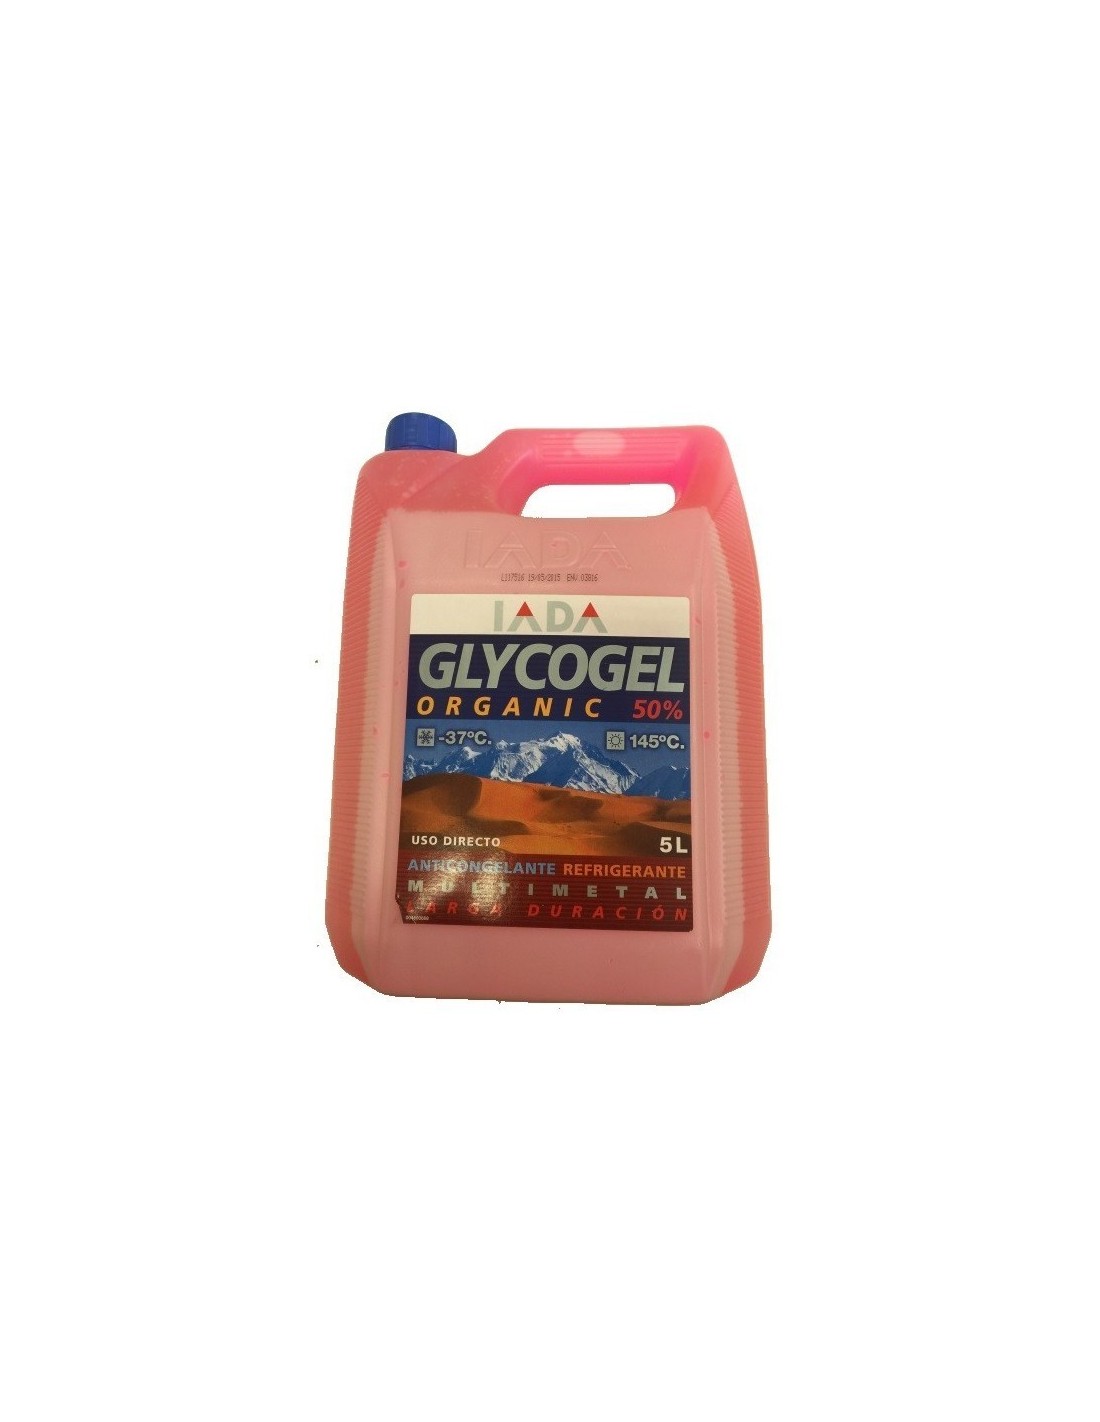 Glycogel Orgánico 50% Rosa G12, Anticongelante|5 L -  12.90€- Capacidad 5 Litros